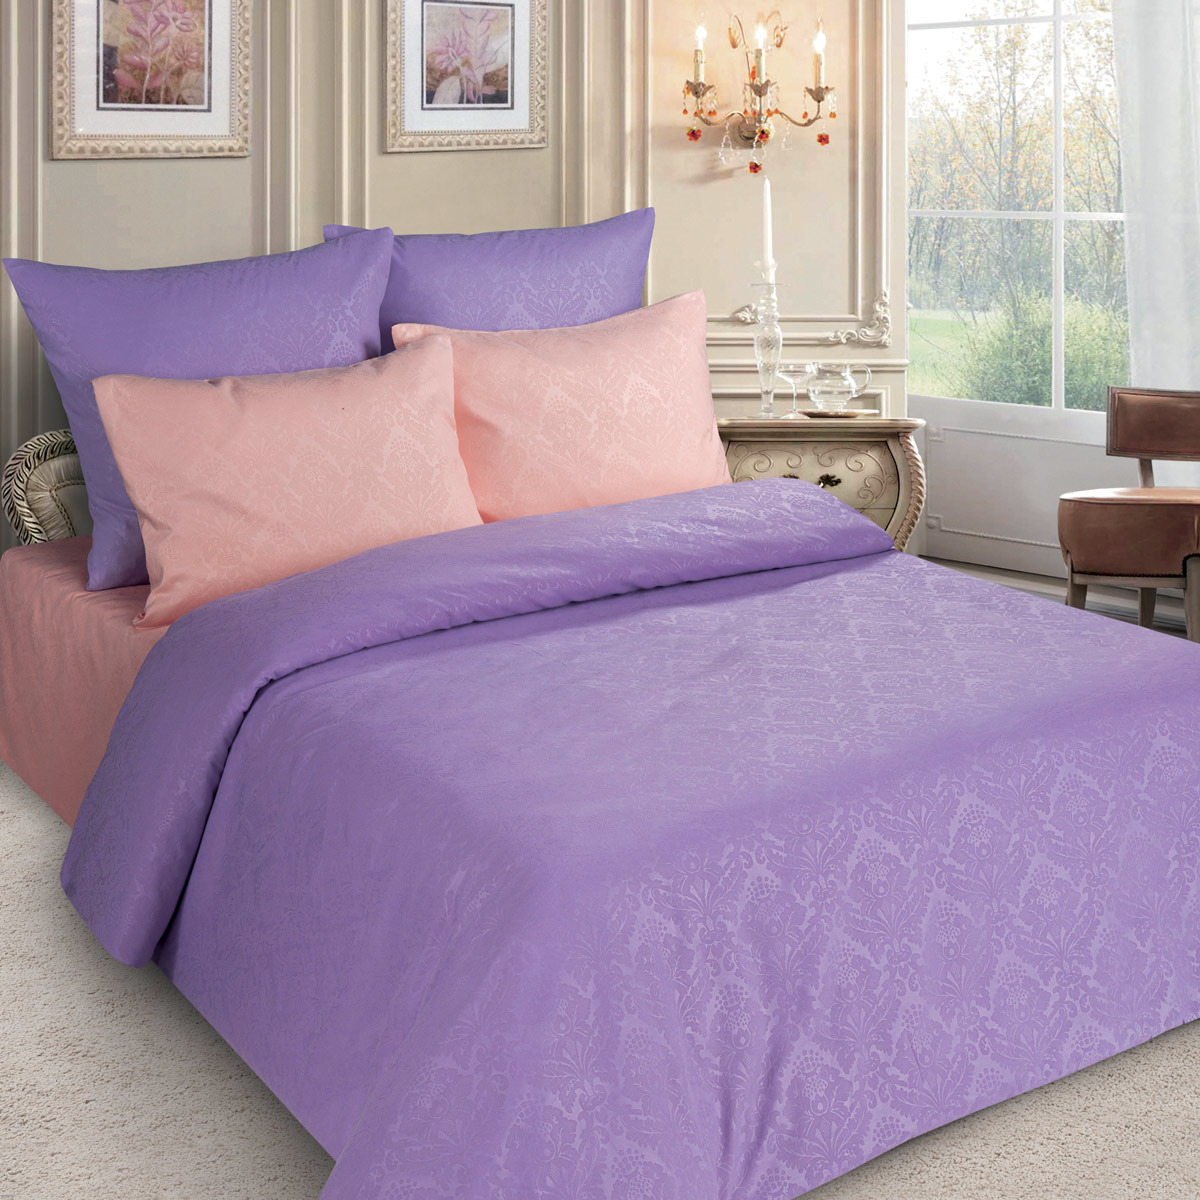 фото Комплект постельного белья Letto, PS135-4, фиолетовый, 2-х спальный, наволочки 70x70 Letto home textile